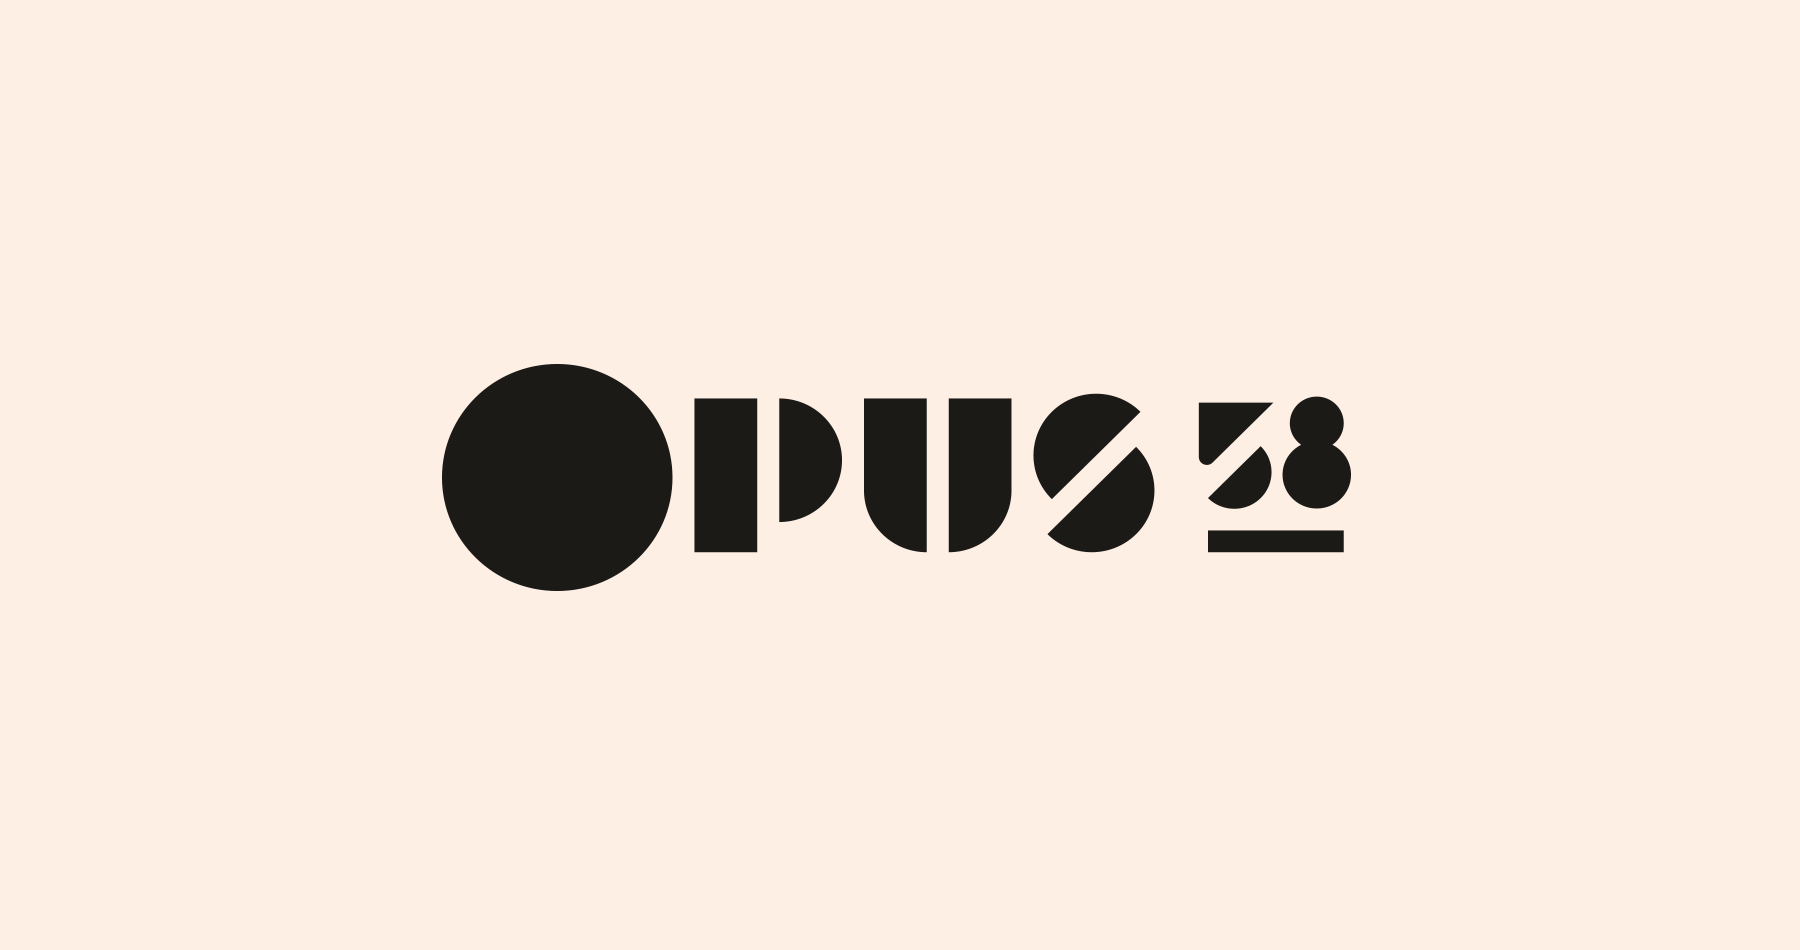 Les 3 versions du logo Opus 58